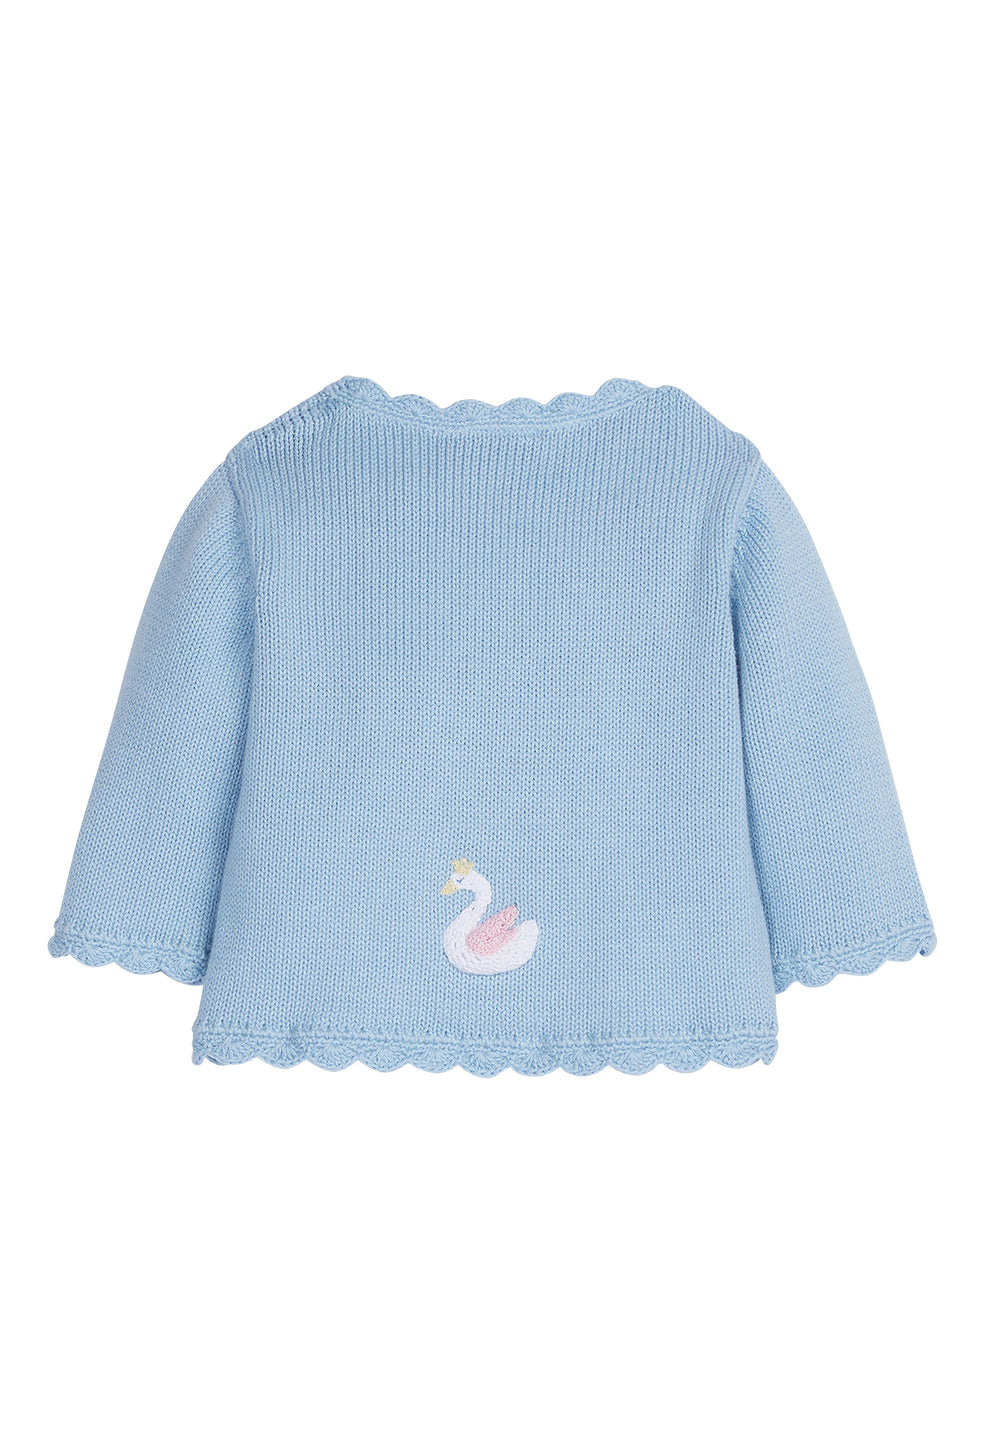 Swan Crochet Sweater